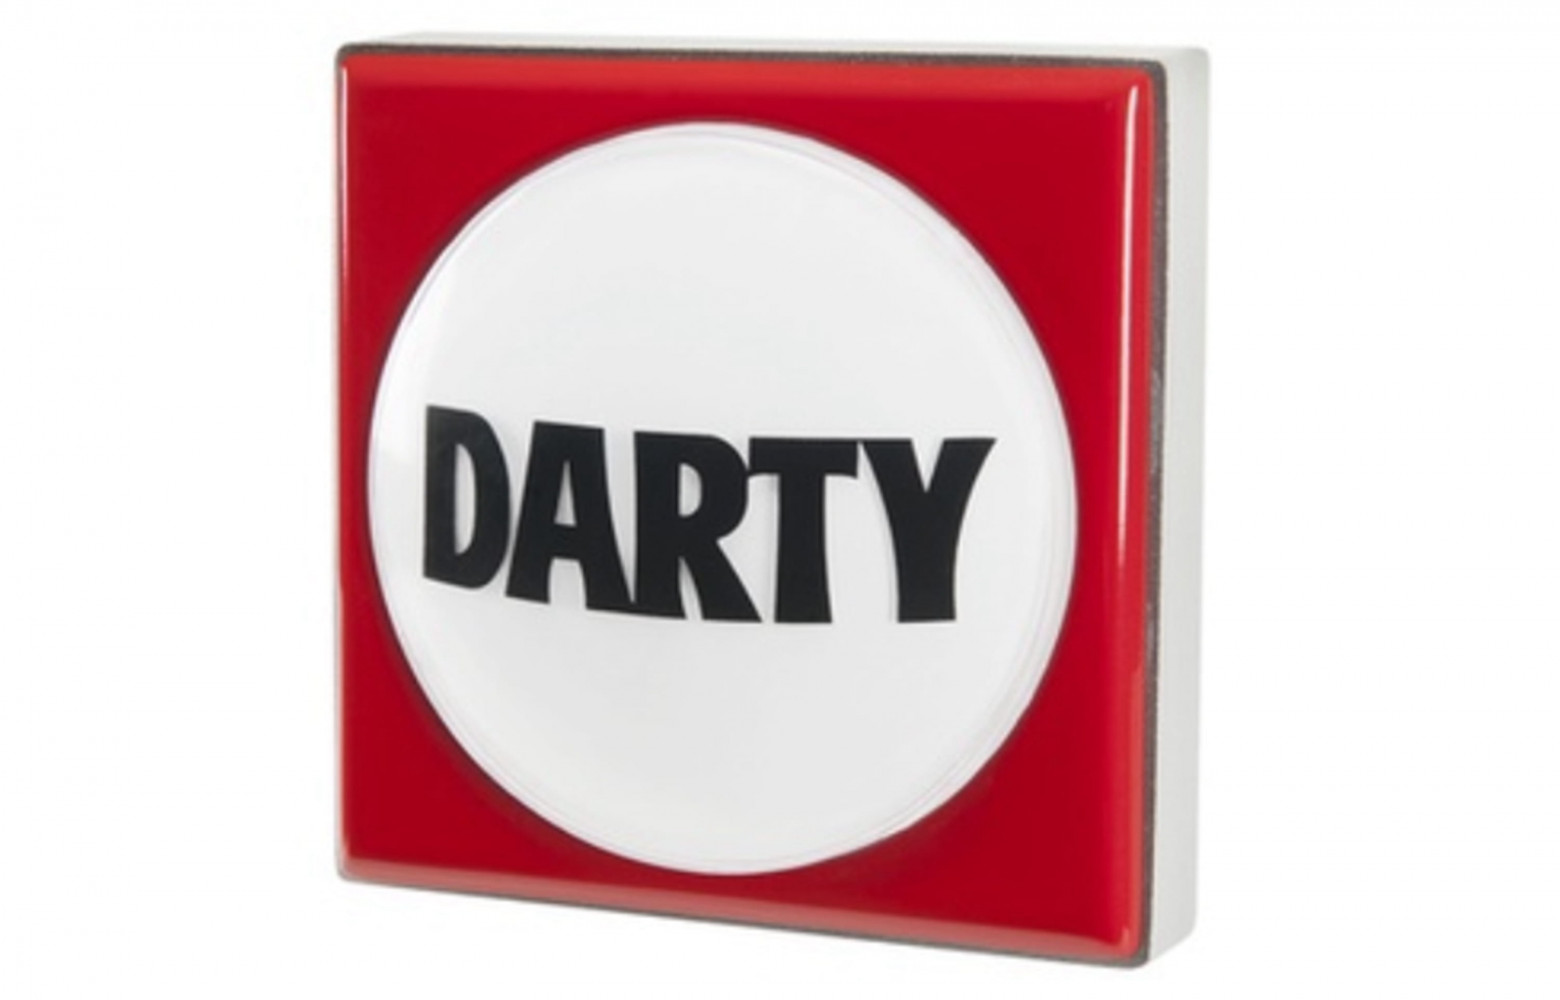 Le 5 juin 2014, Darty lance son bouton connecté. Pour 25 € puis un abonnement, vous pouvez...